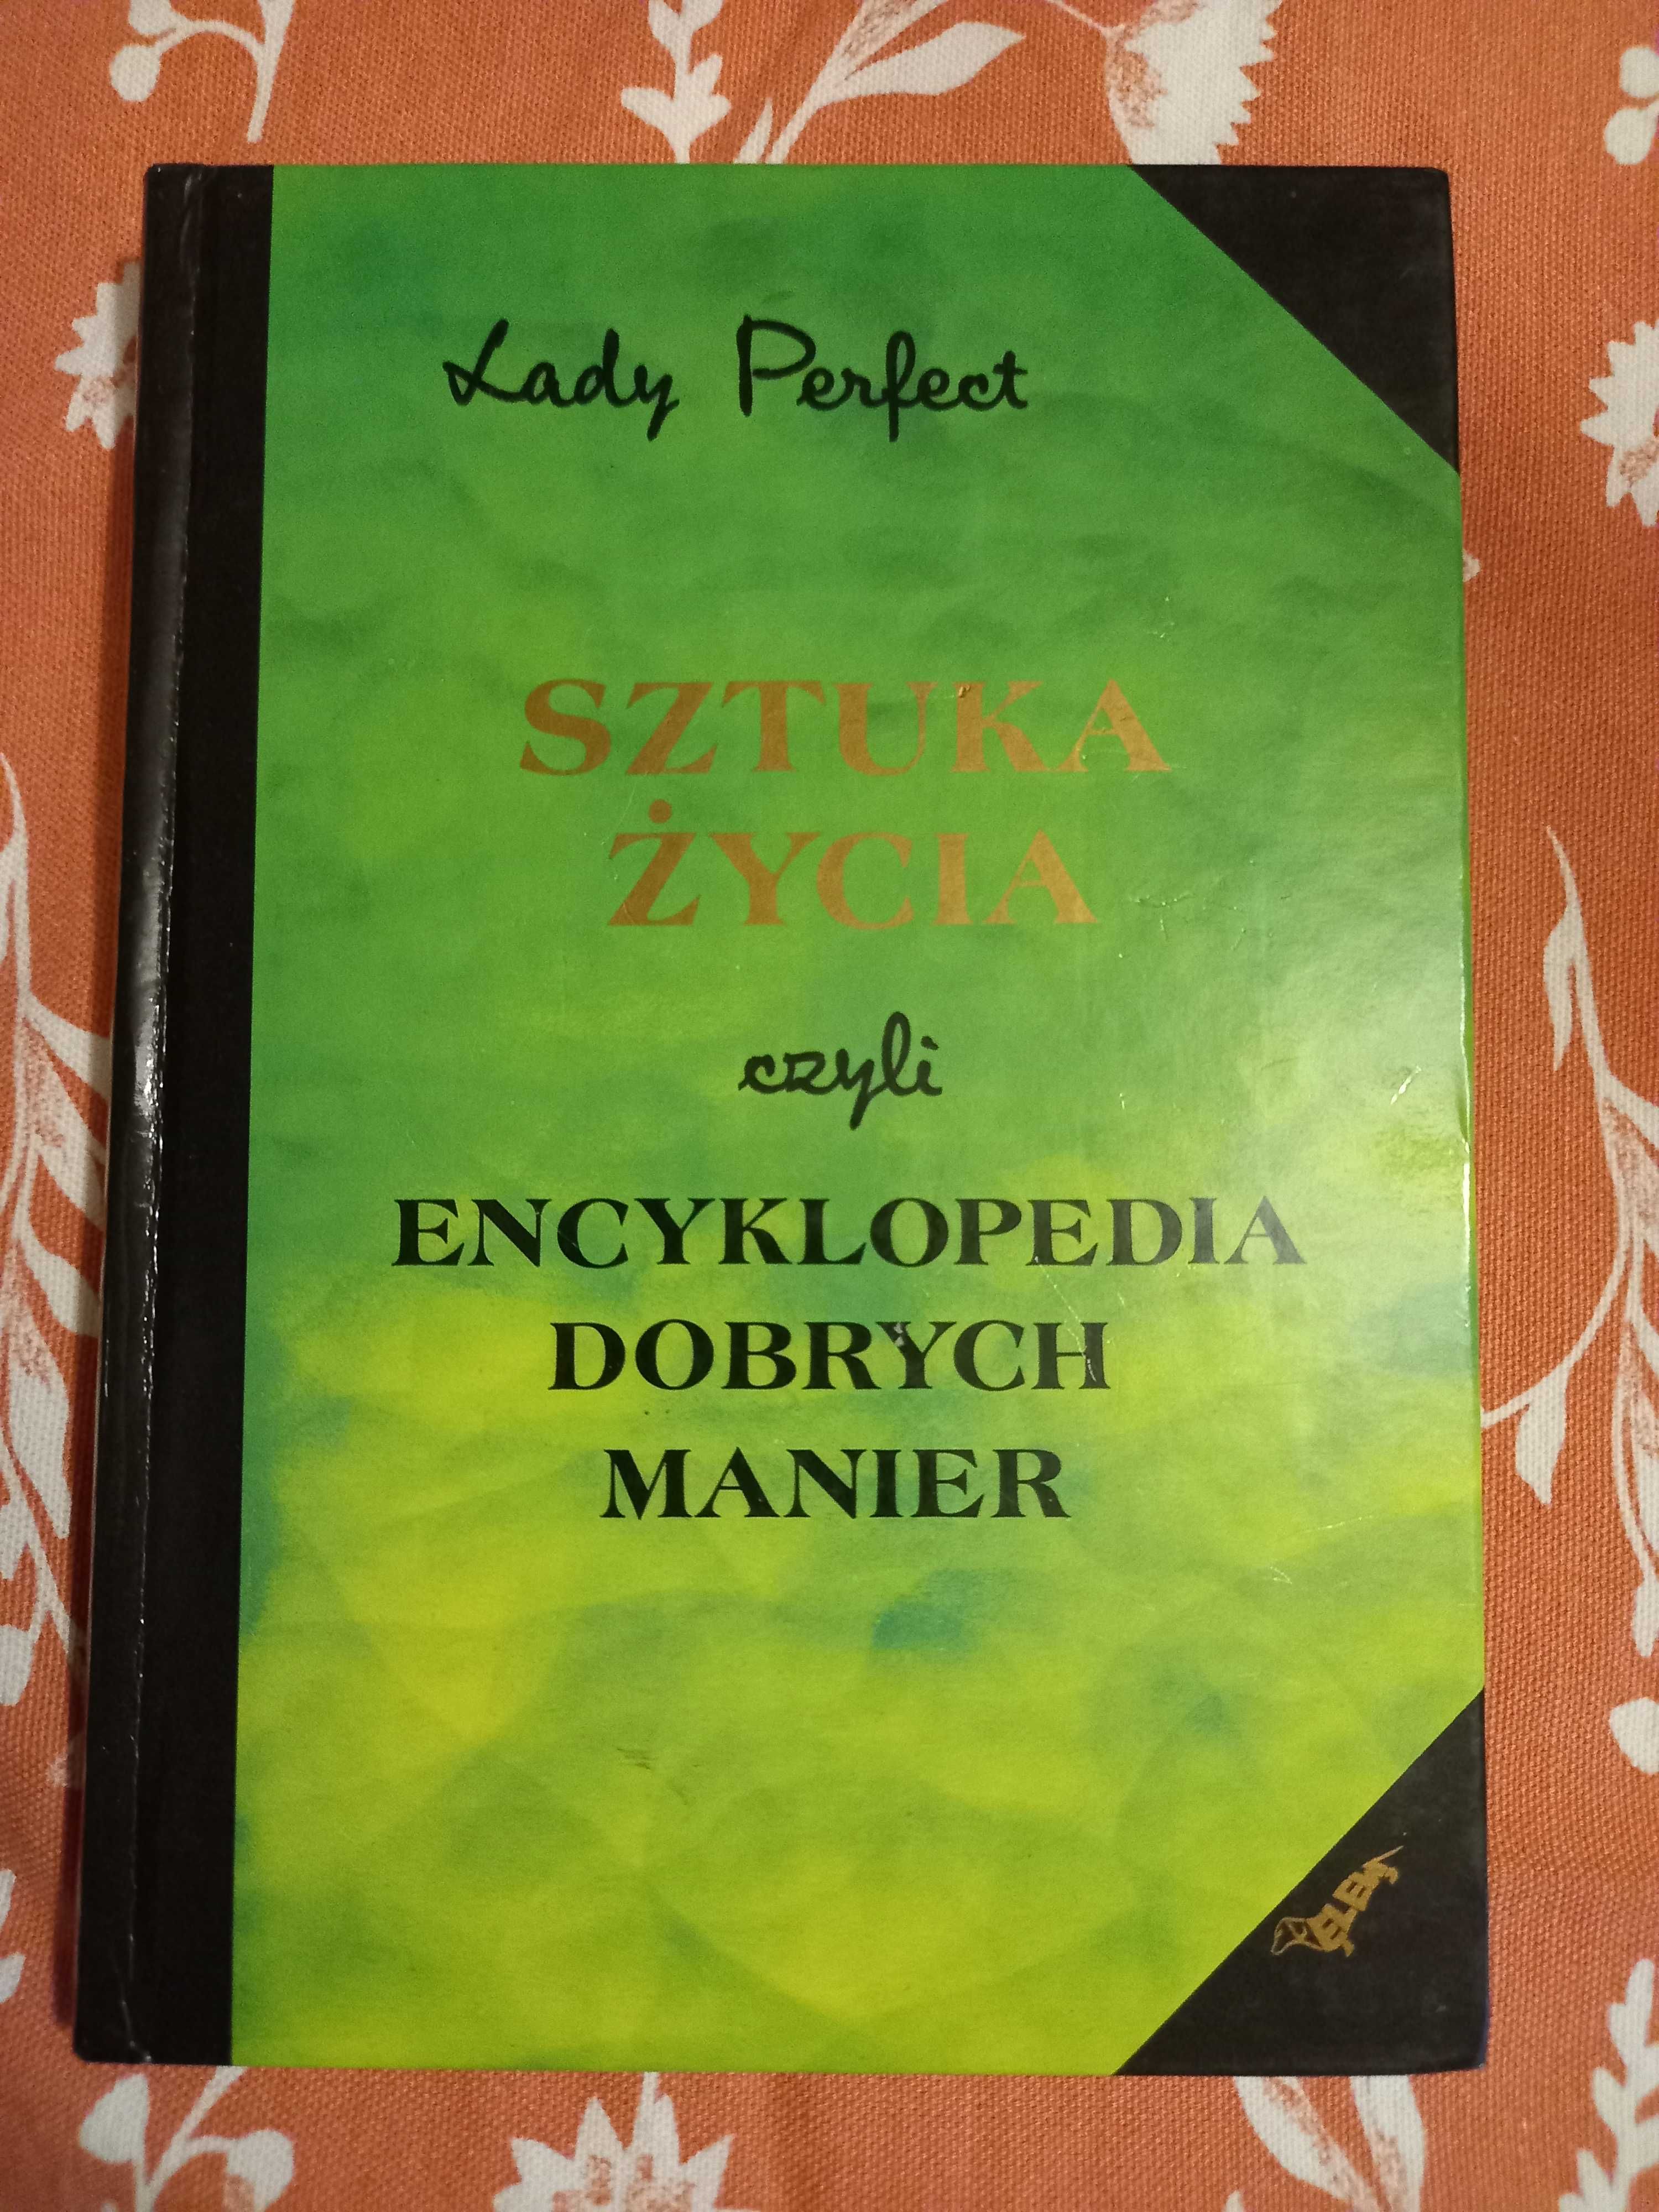 "Sztuka życia czyli encyklopedia dobrych manier", Lady Perfect